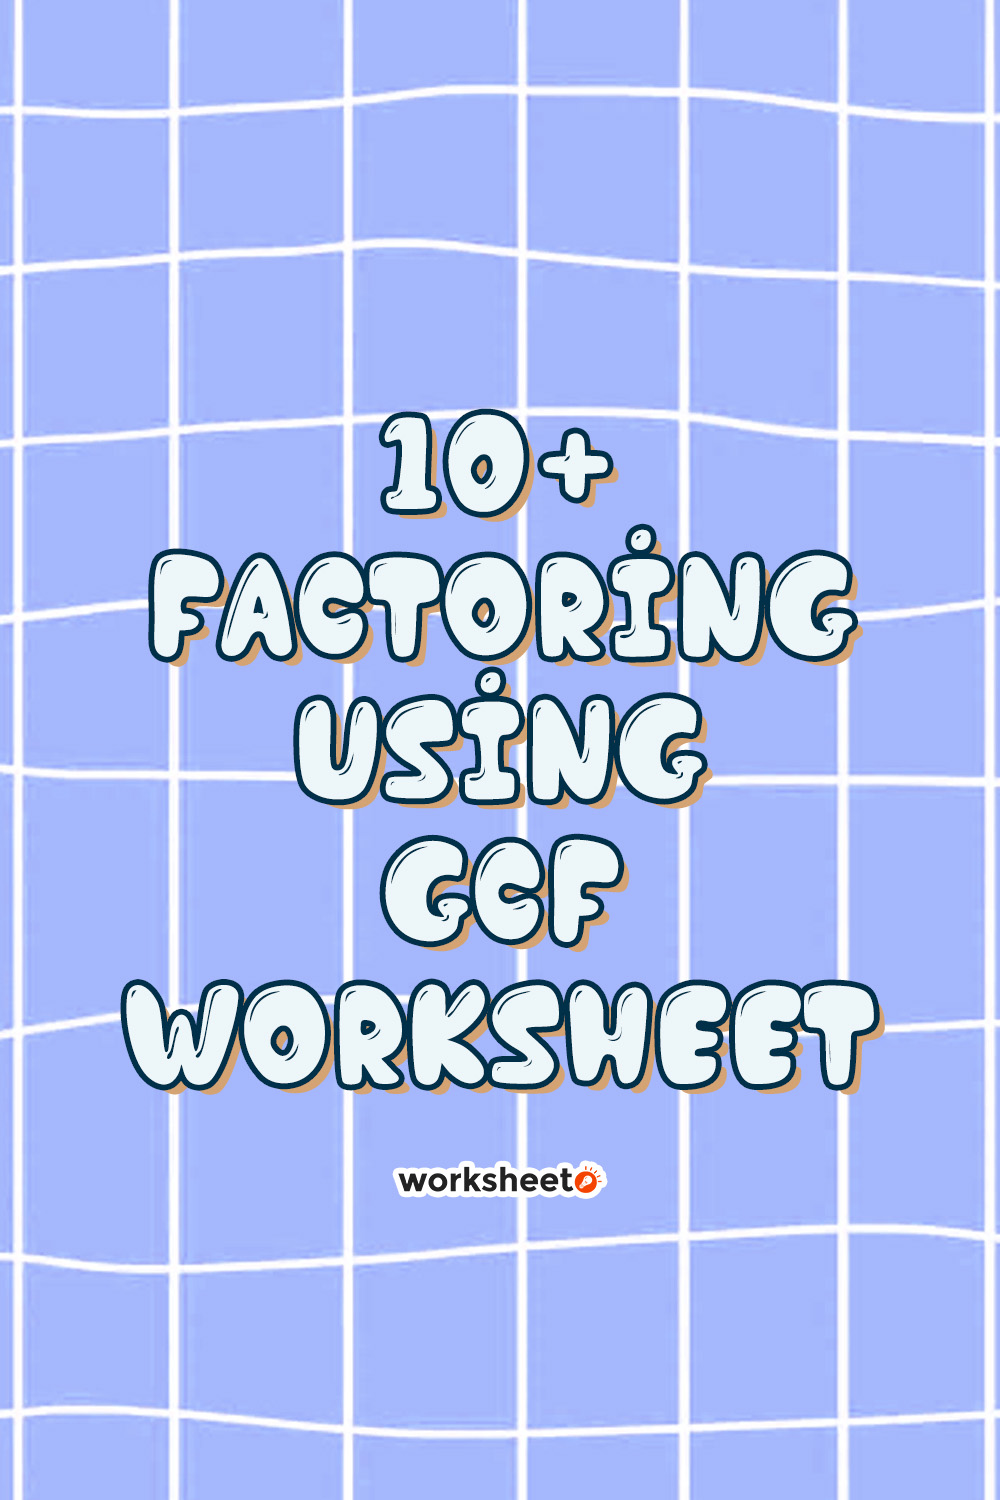 18 Images of Factoring Using GCF Worksheet.pdf